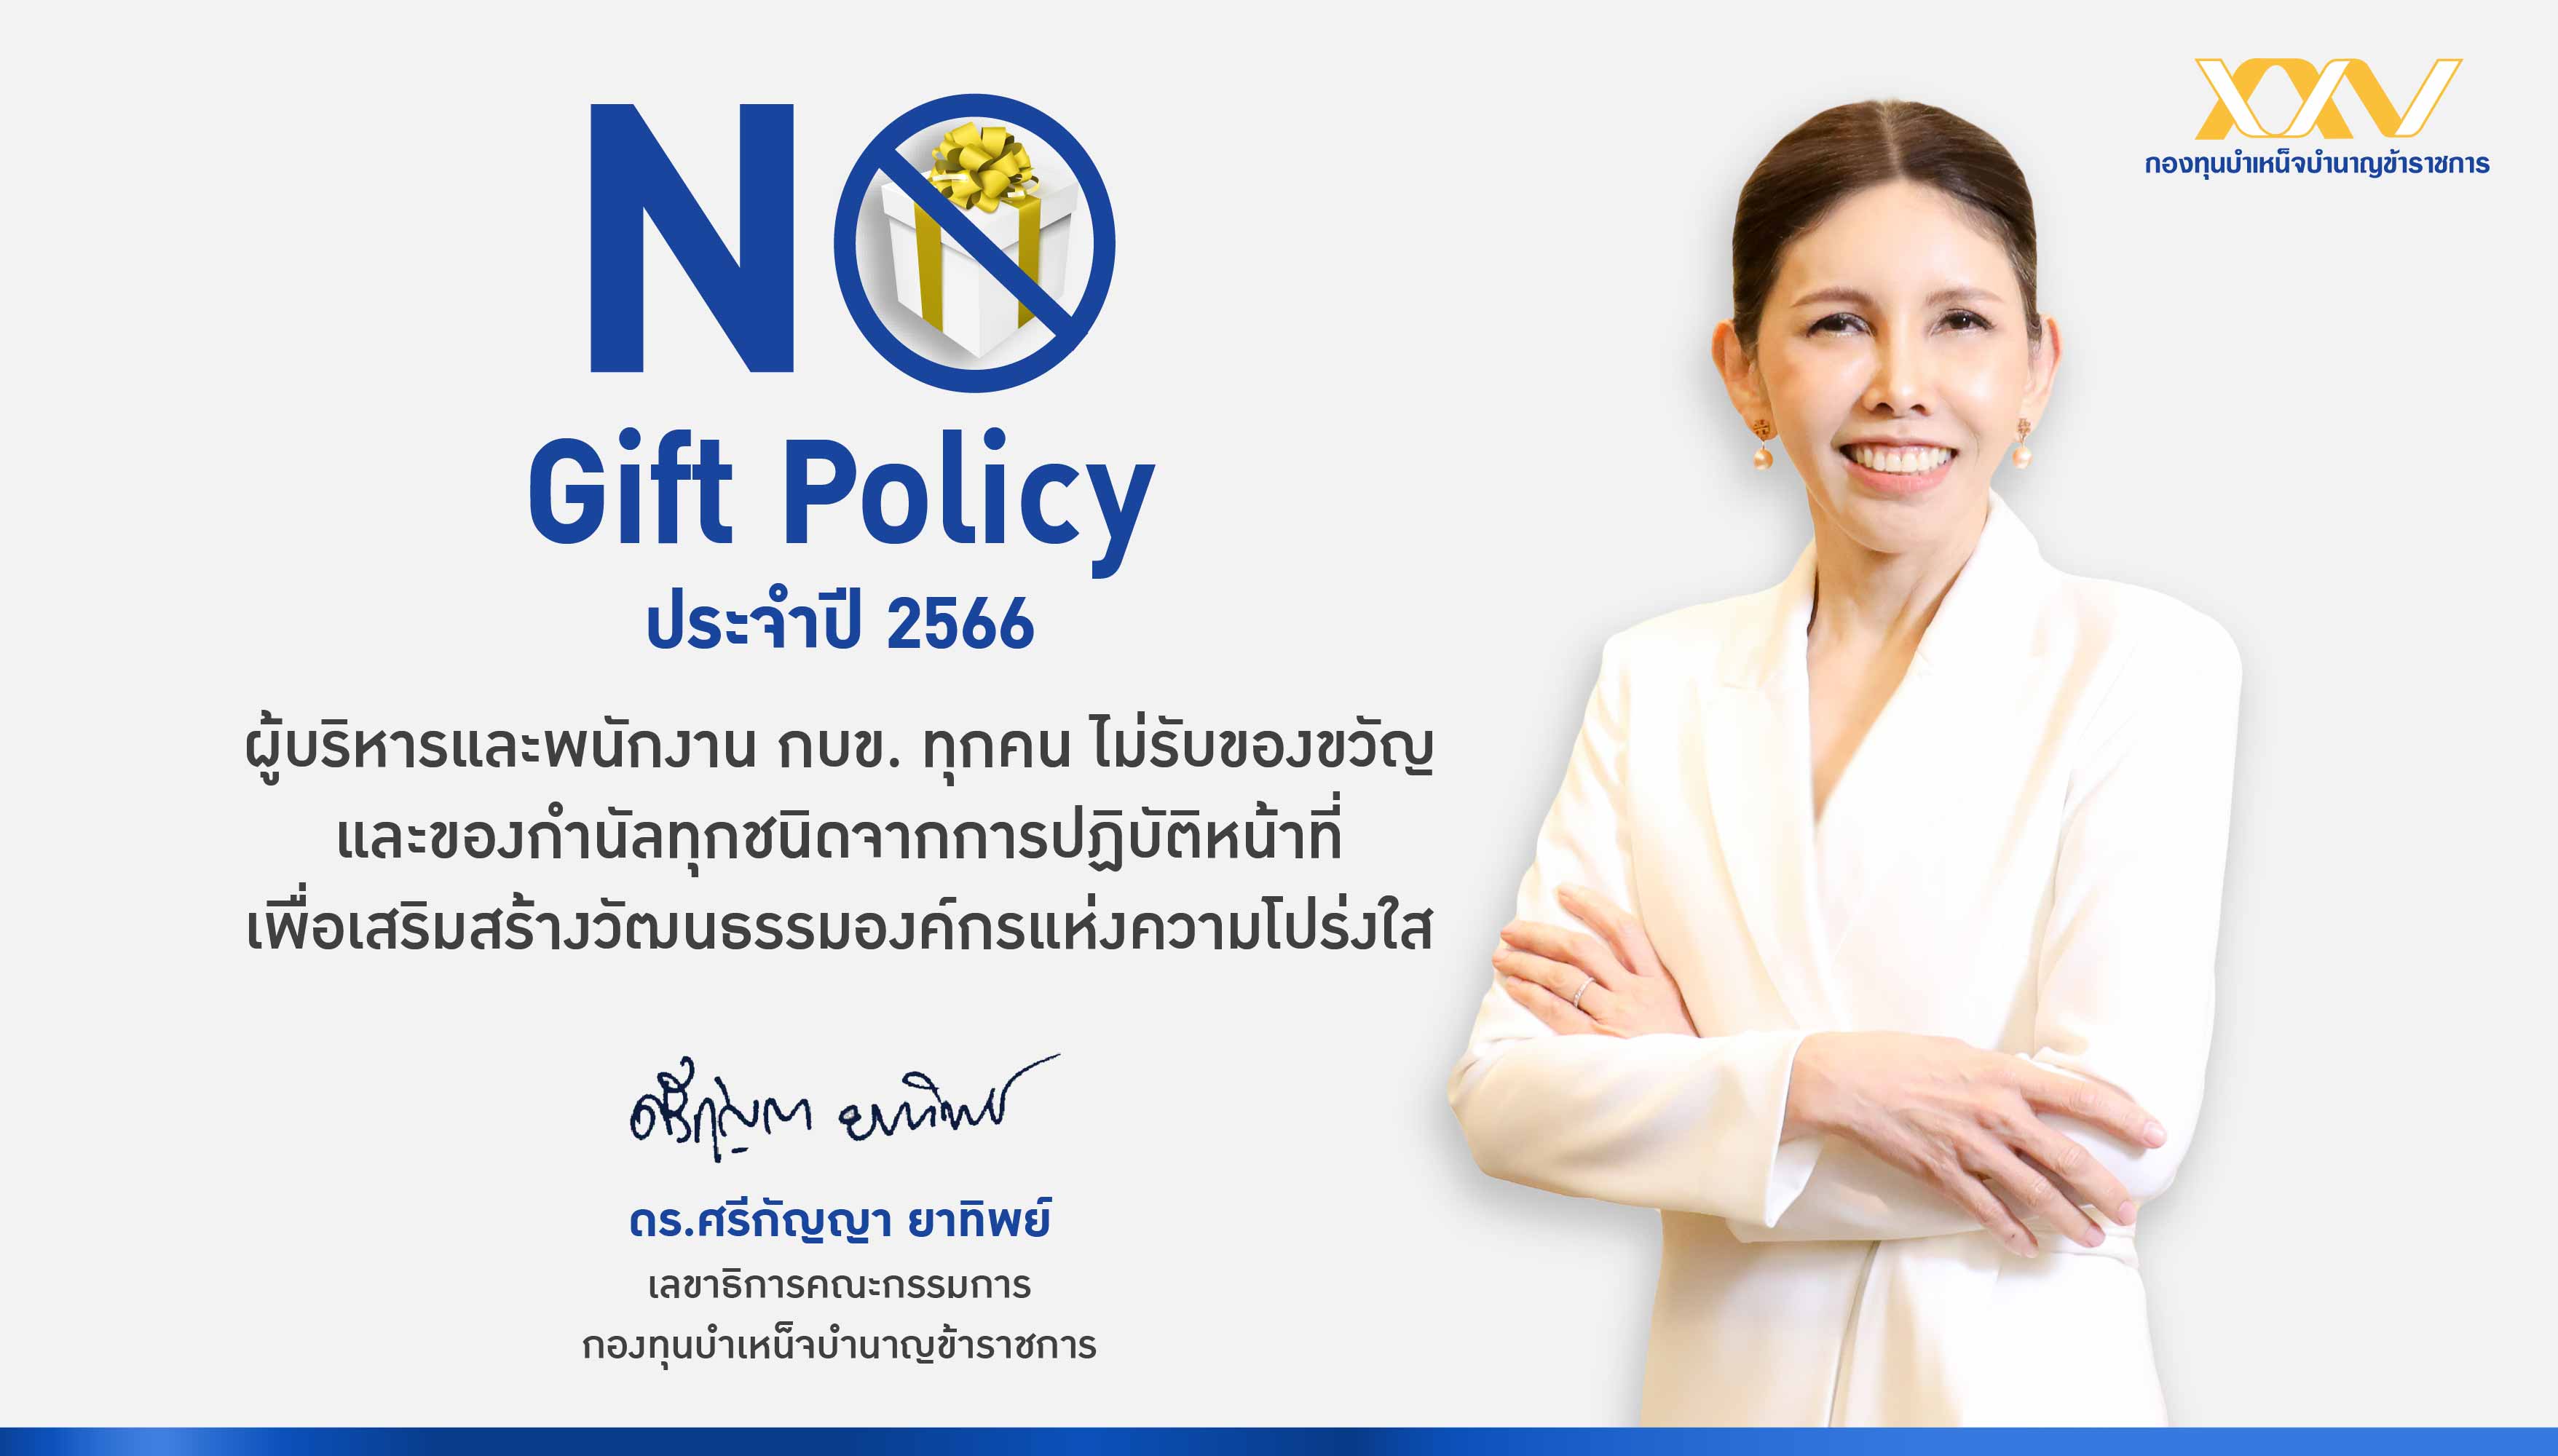 กบข. ประกาศงดรับของขวัญและของกำนัล (No Gift Policy) ประจำปี 2566